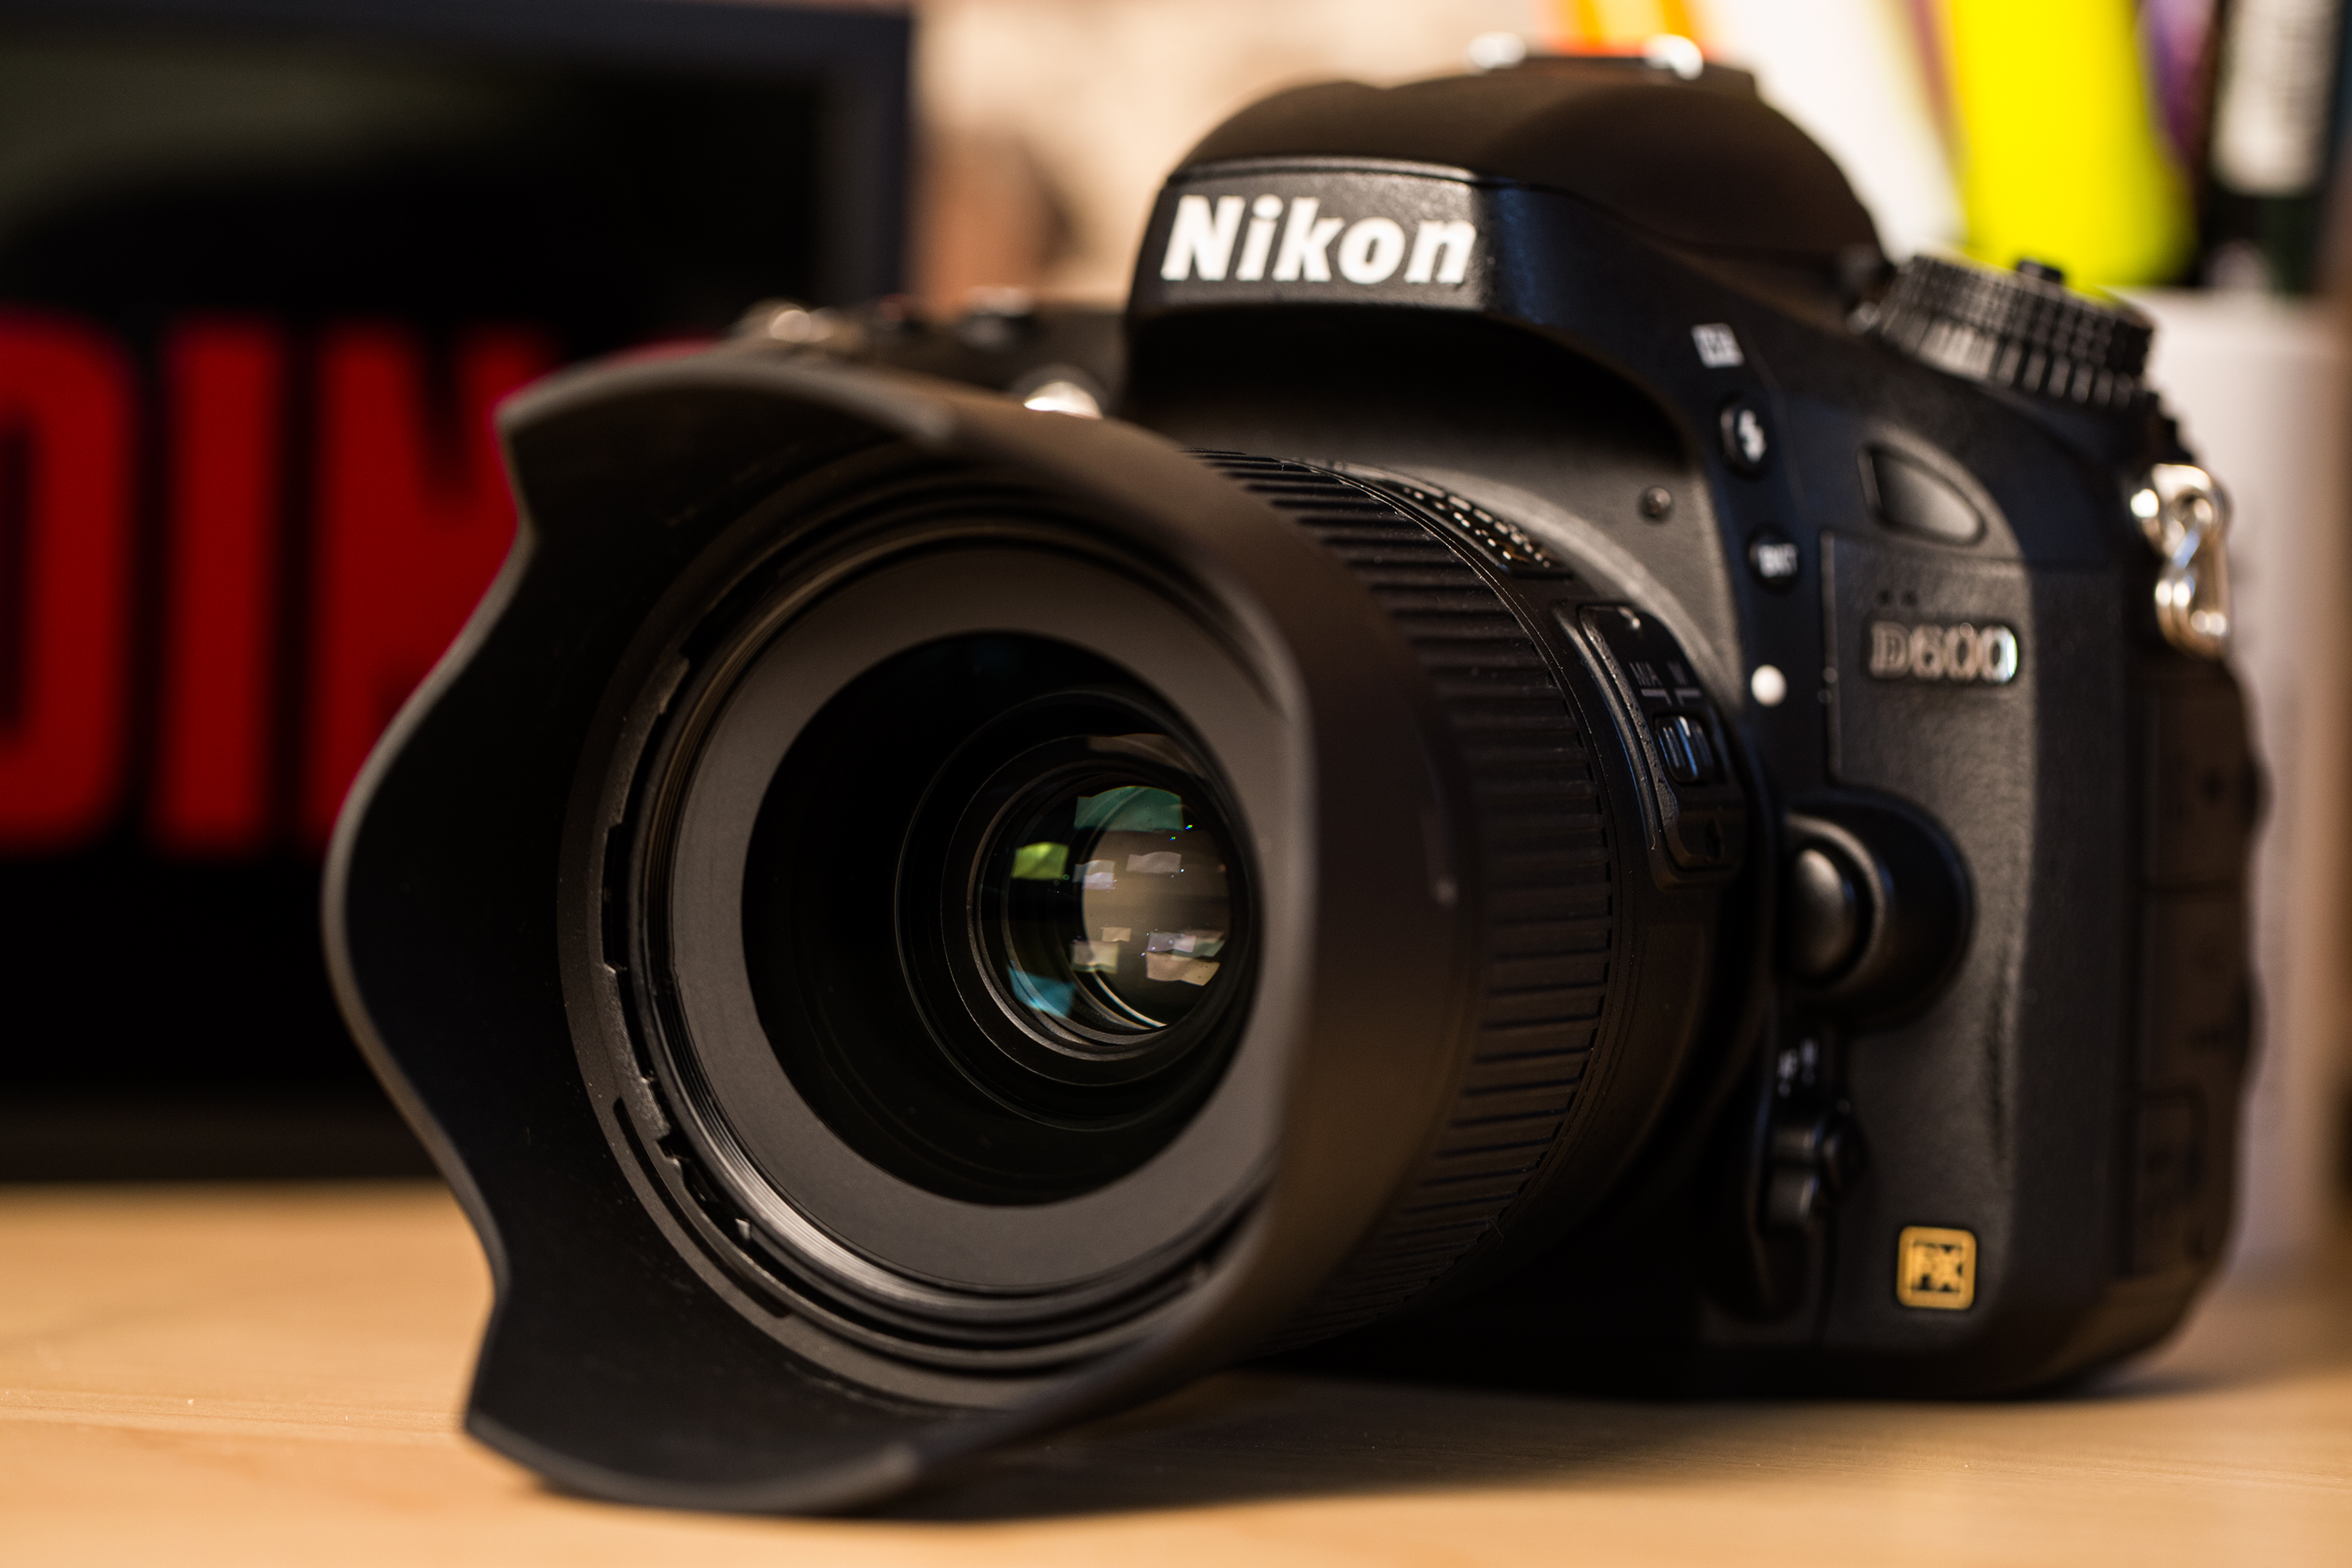 Nikon nikkor 35mm f 1.8 g. Nikon 35mm f/1.8g. Nikon 35 1.8. Nikon 35 1.8g. Nikon 35mm 1.8g.